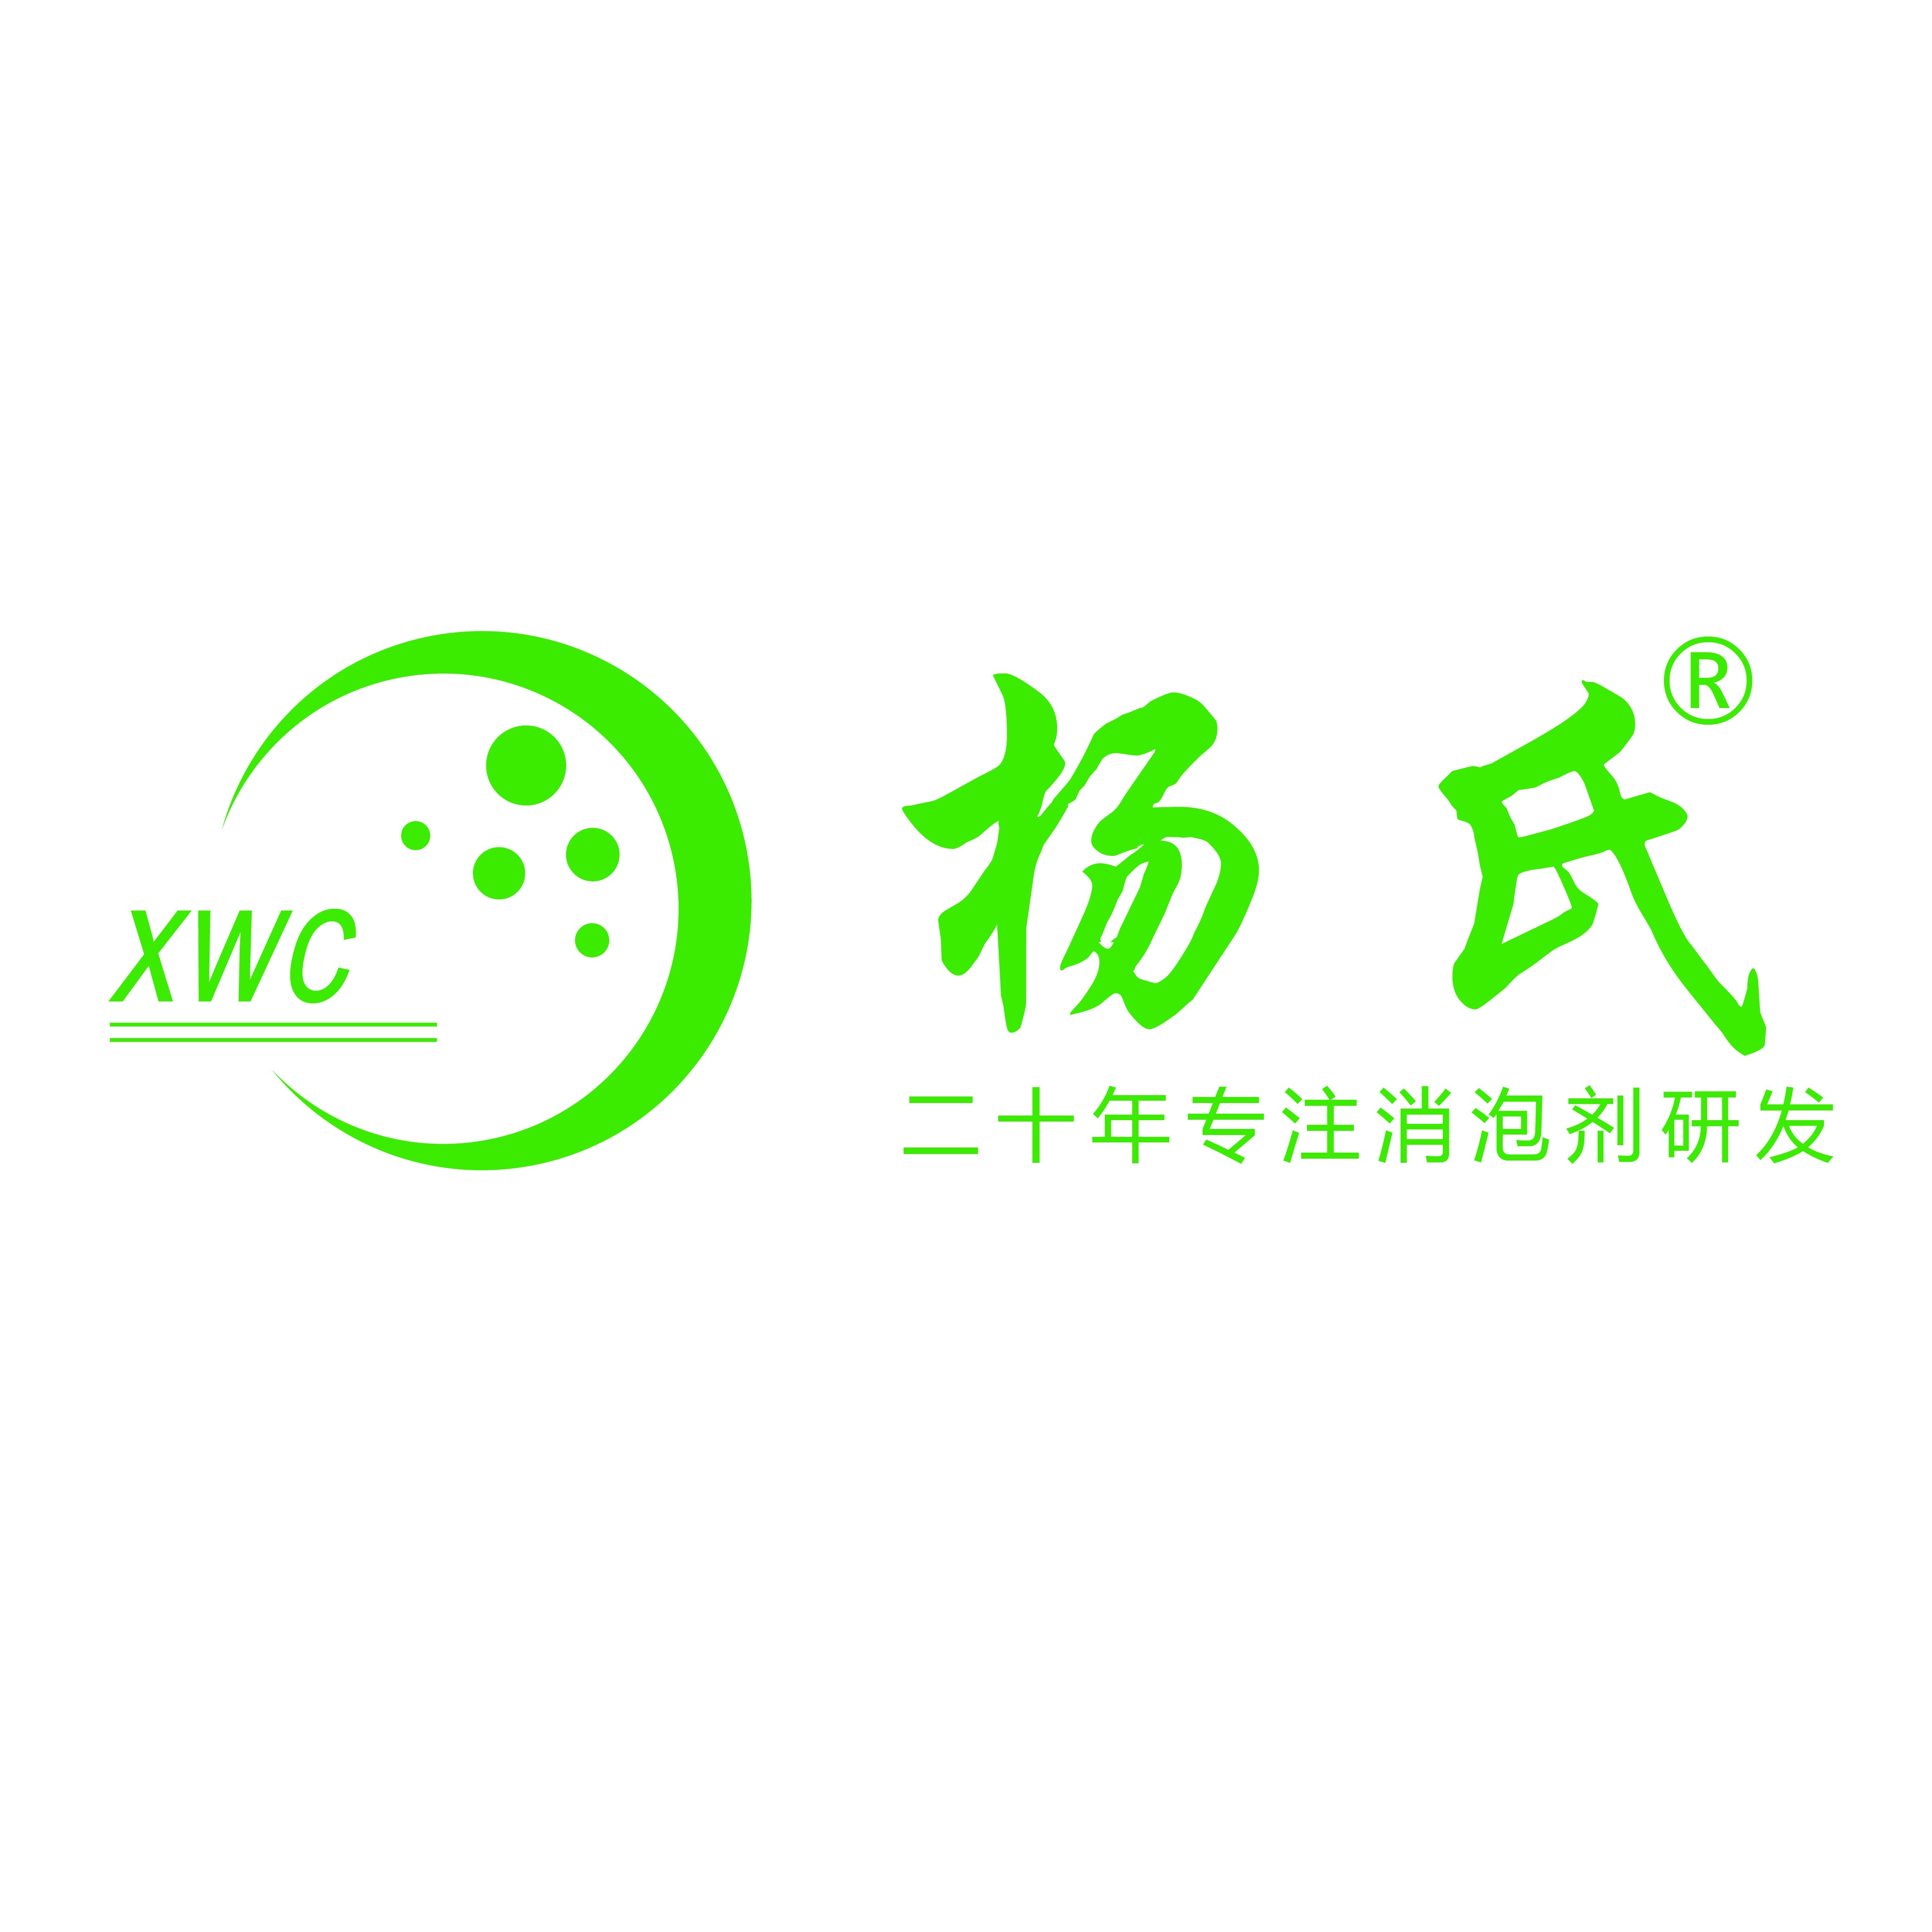 CHINACOAT-Exhibitor Info -Hefei XinWanCheng Environmental